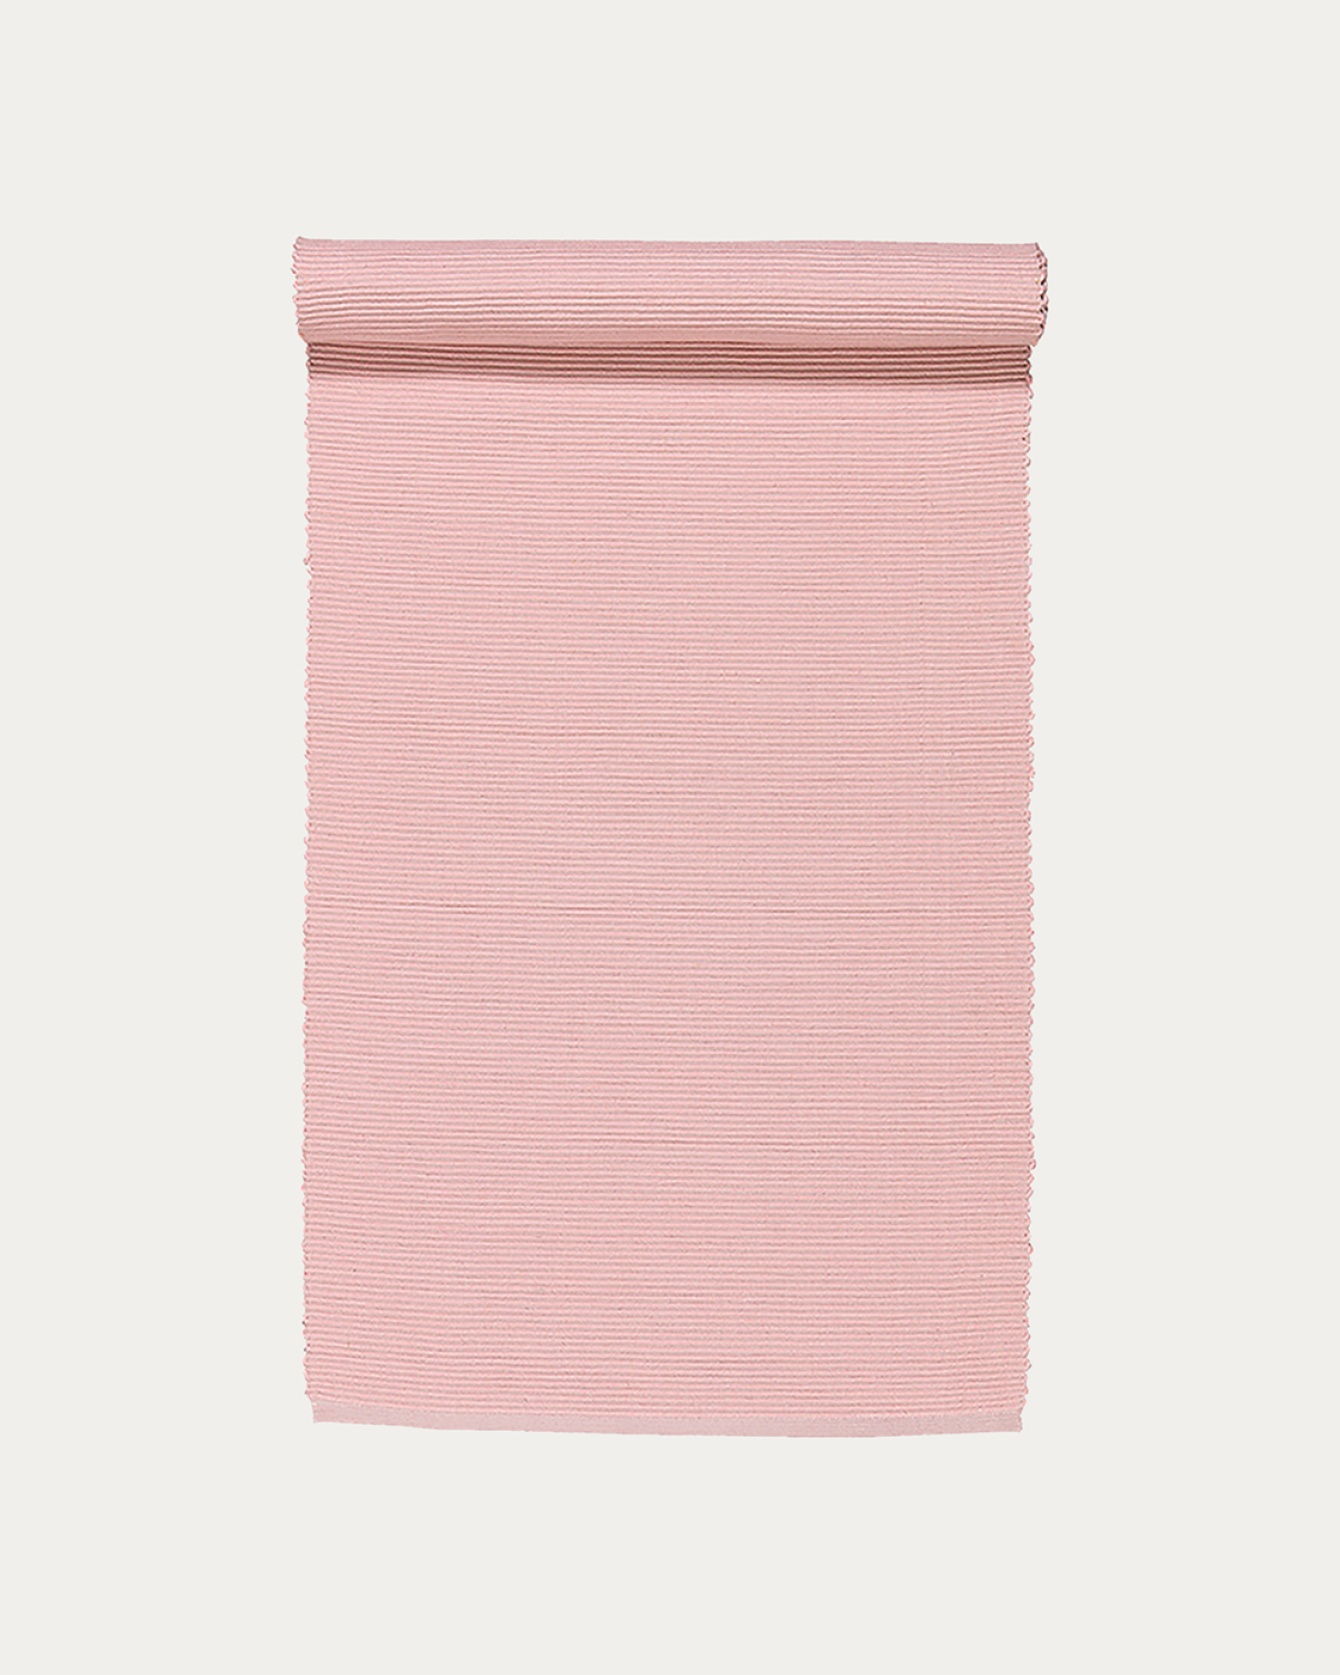 Produktbild dammig rosa UNI löpare av mjuk bomull i ribbad kvalité från LINUM DESIGN. Storlek 45x150 cm.